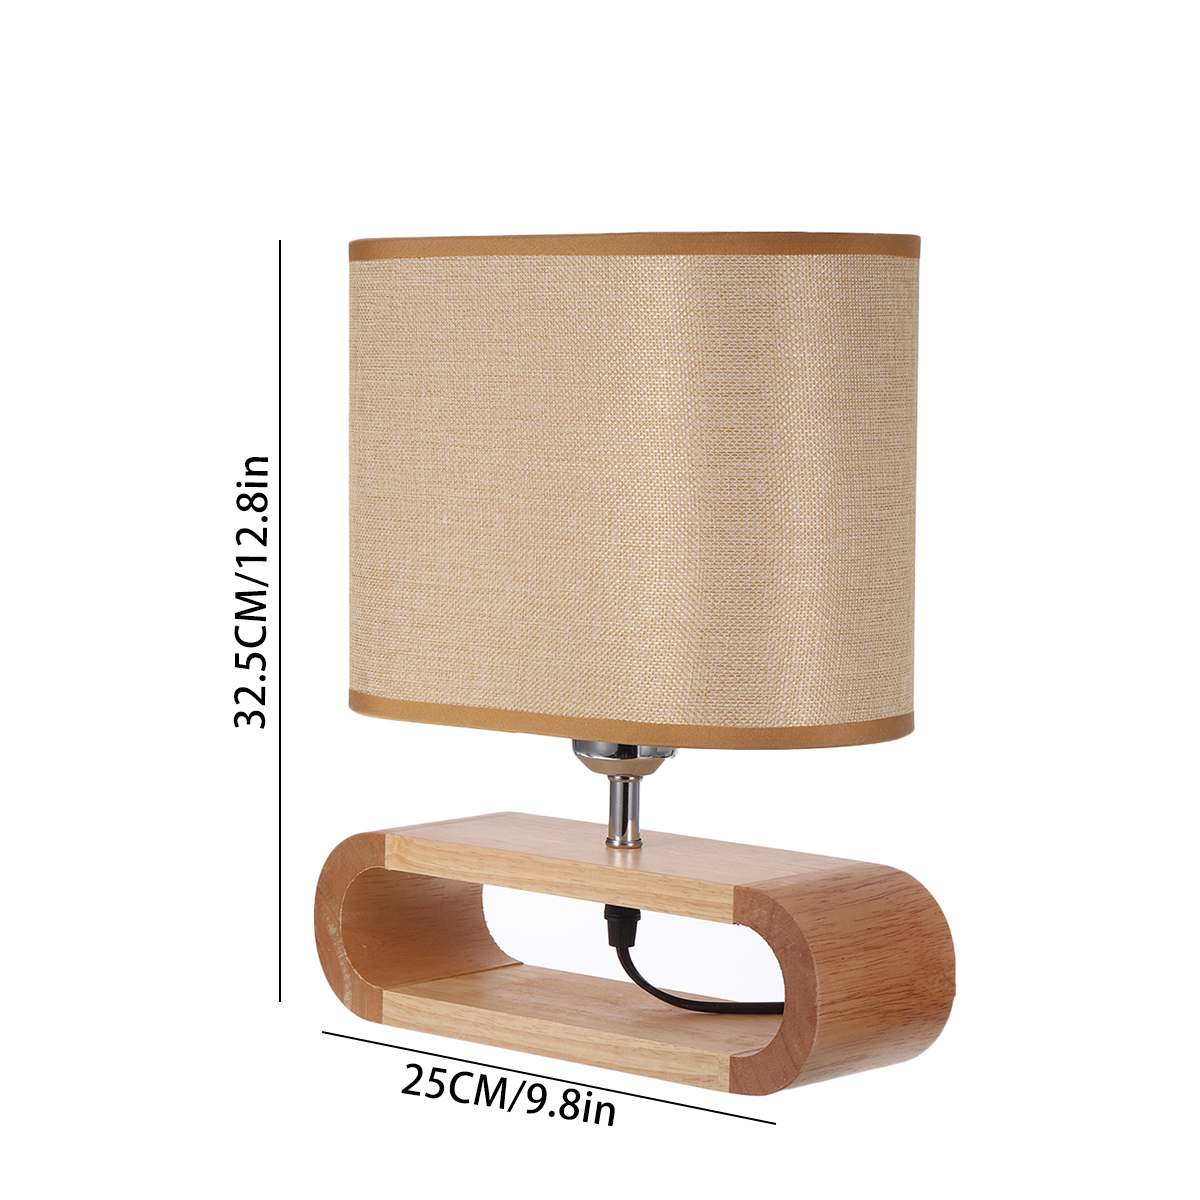 Wooden-Modern-Table-Lamp-Timber-Bedside-Lighting-Desk-Reading-Light-Brown-White-85-265V-1744461-7